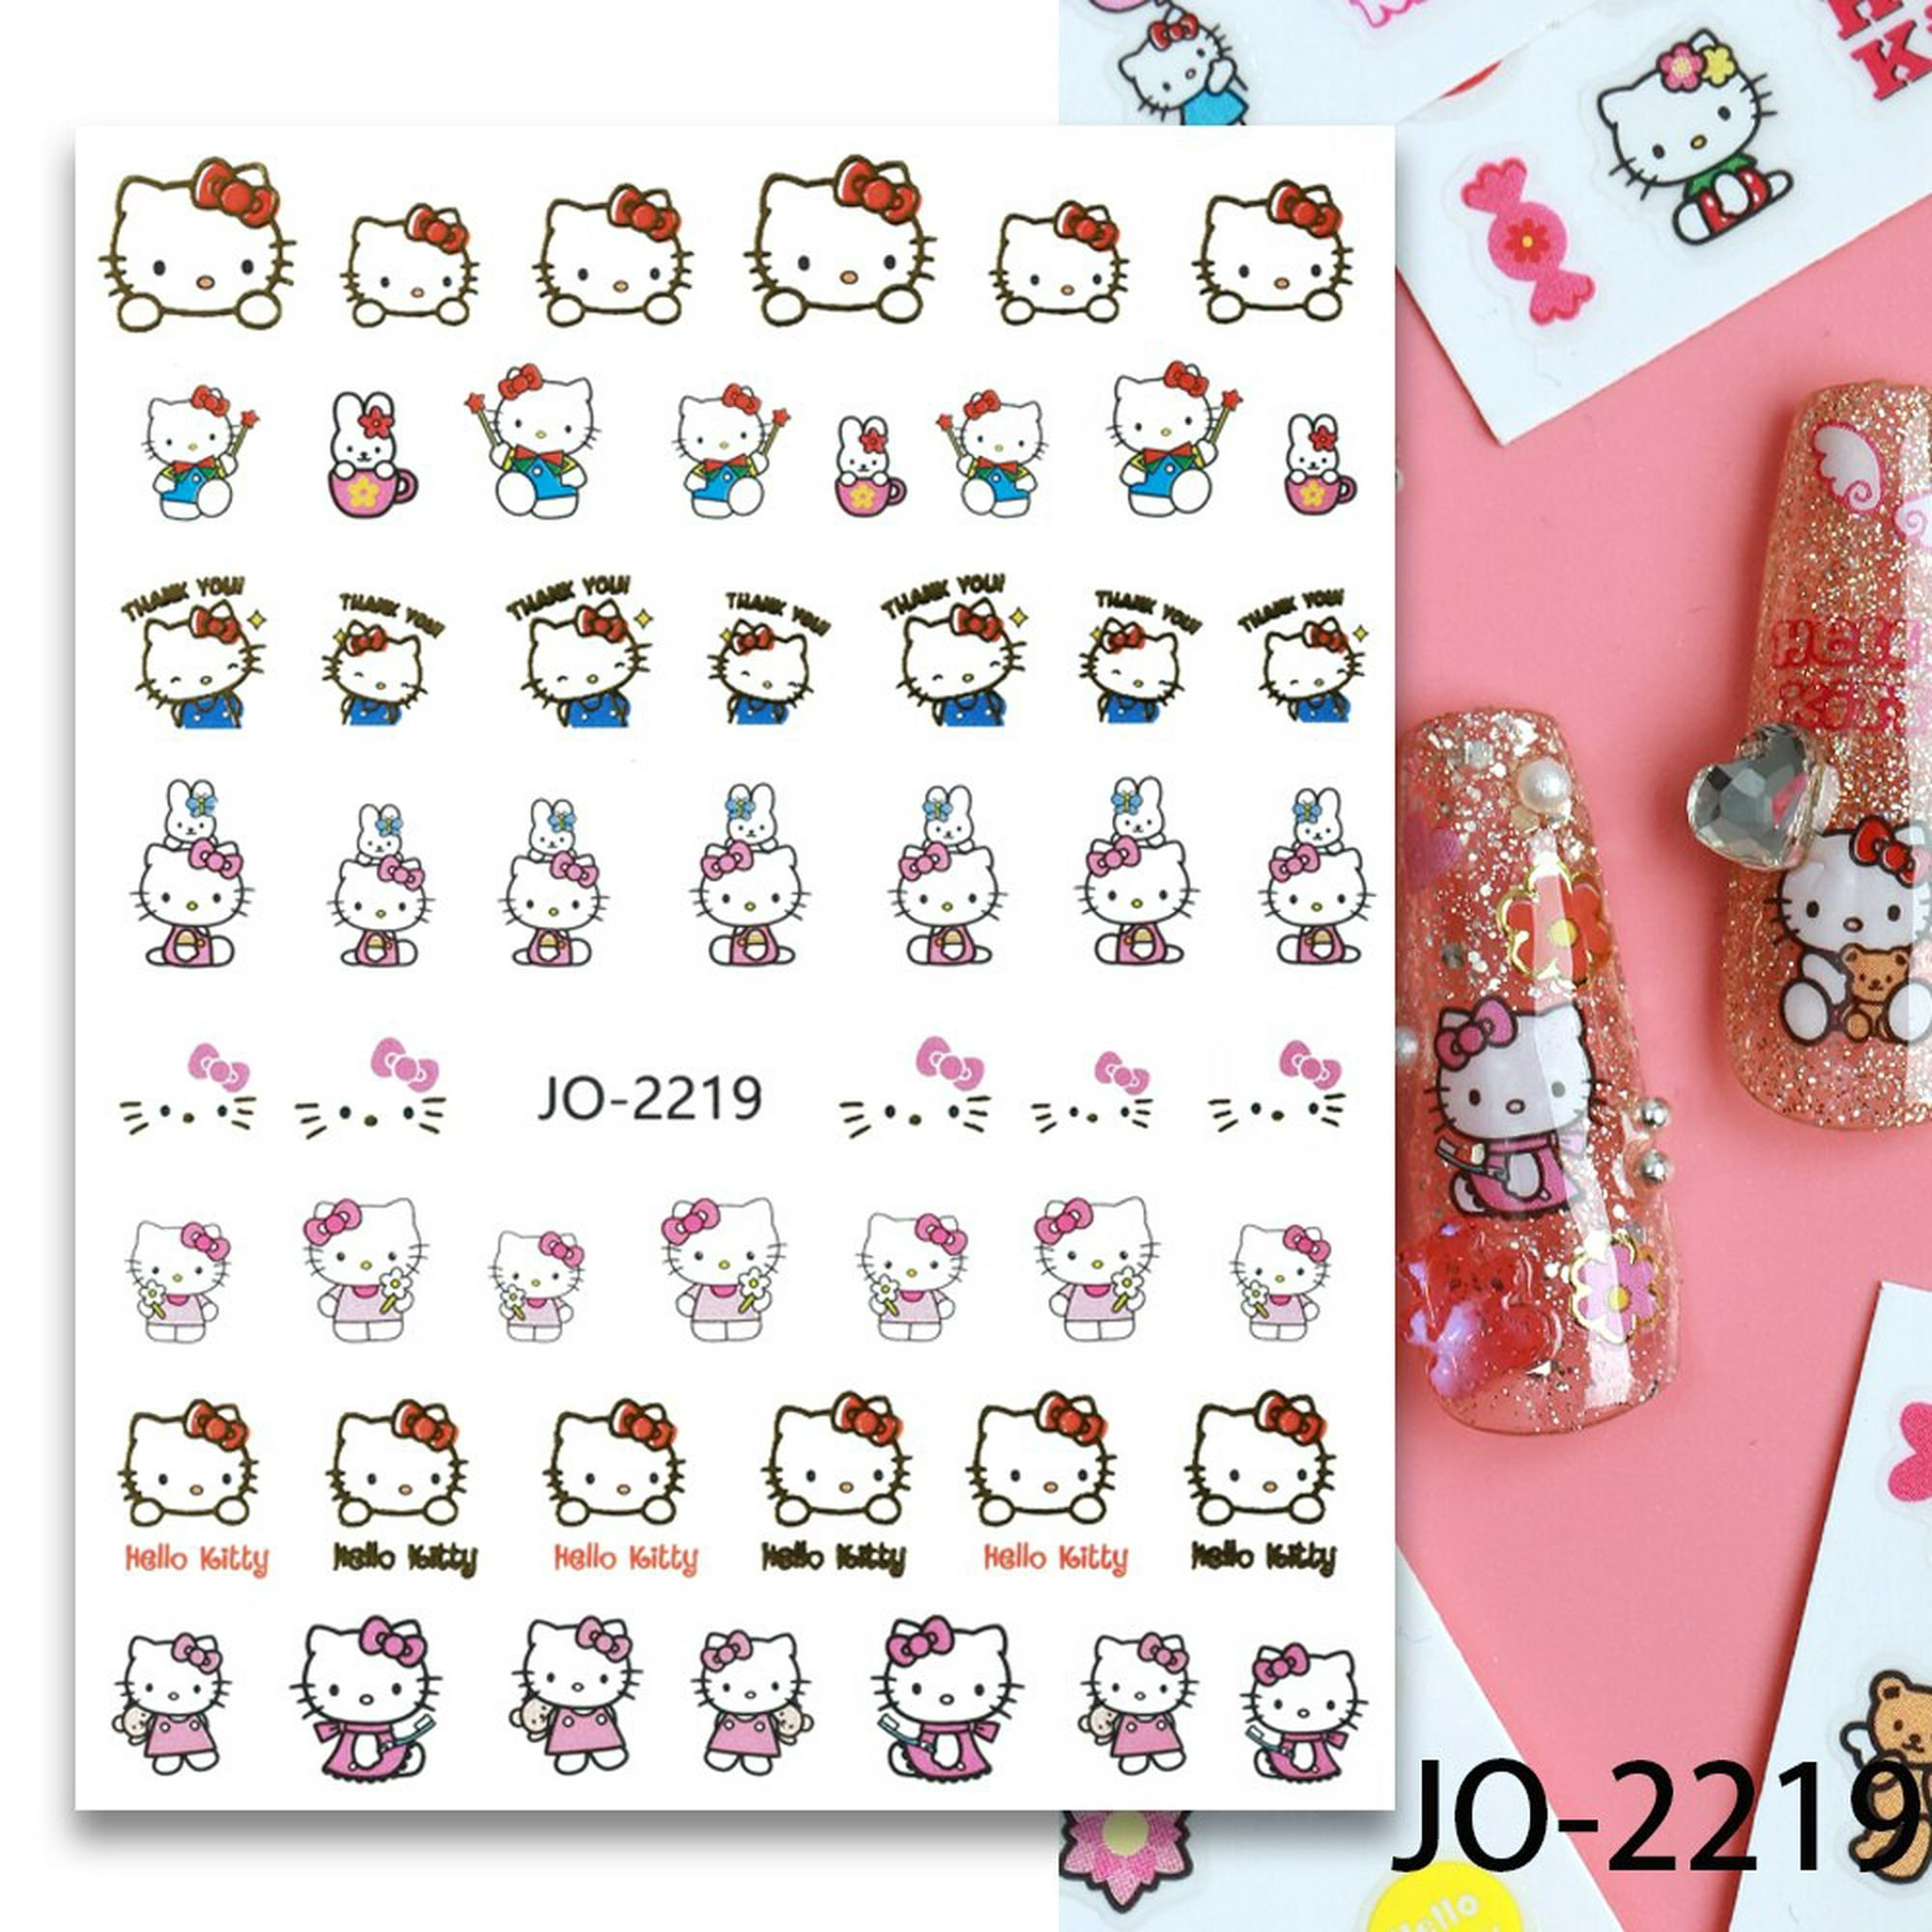 Stikers de Uñas Hello Kitty - Encanto y Diversión en Tus Manicuras